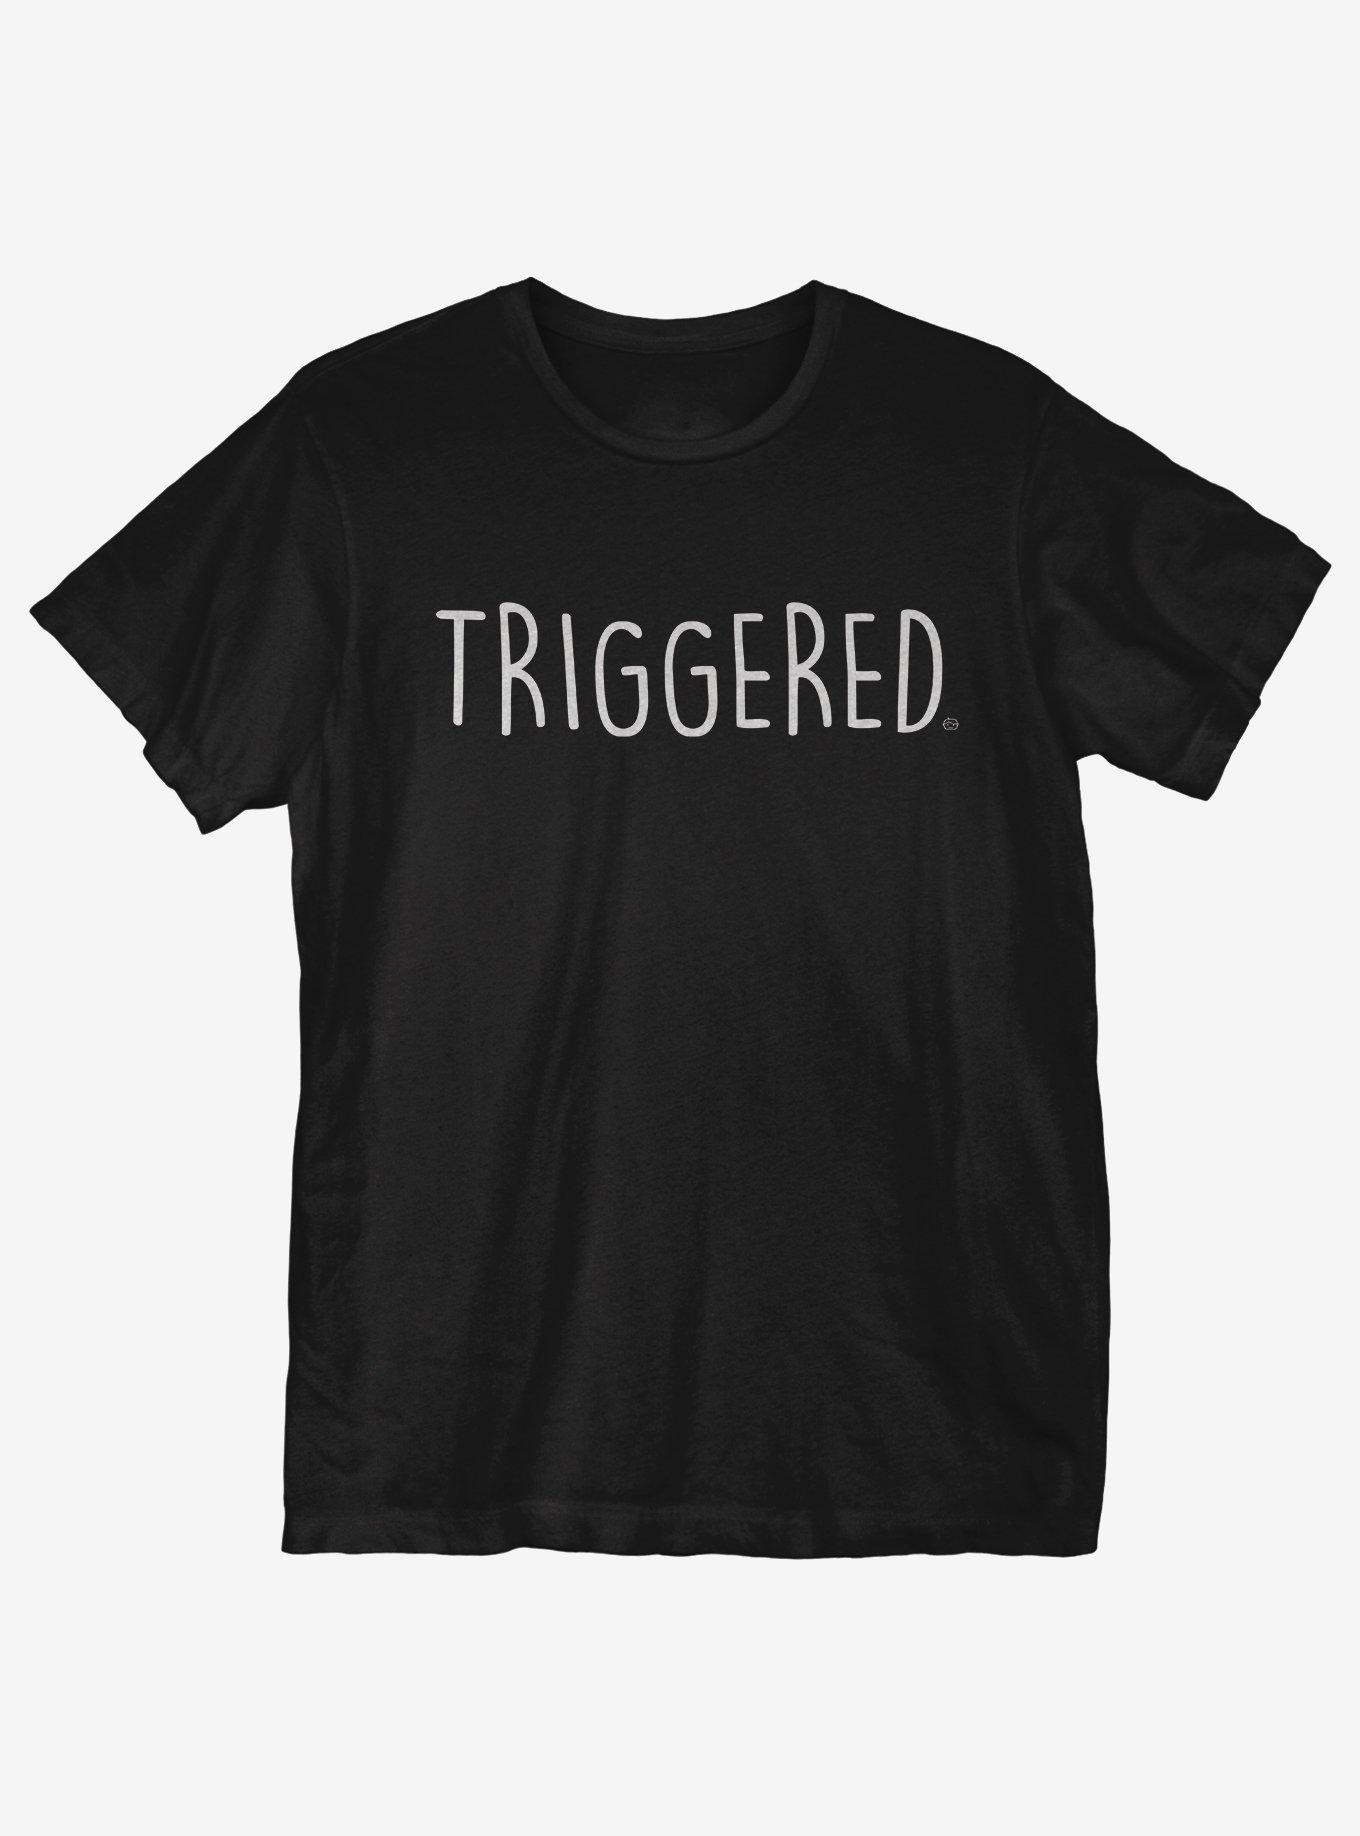 Triggered T-Shirt, BLACK, hi-res